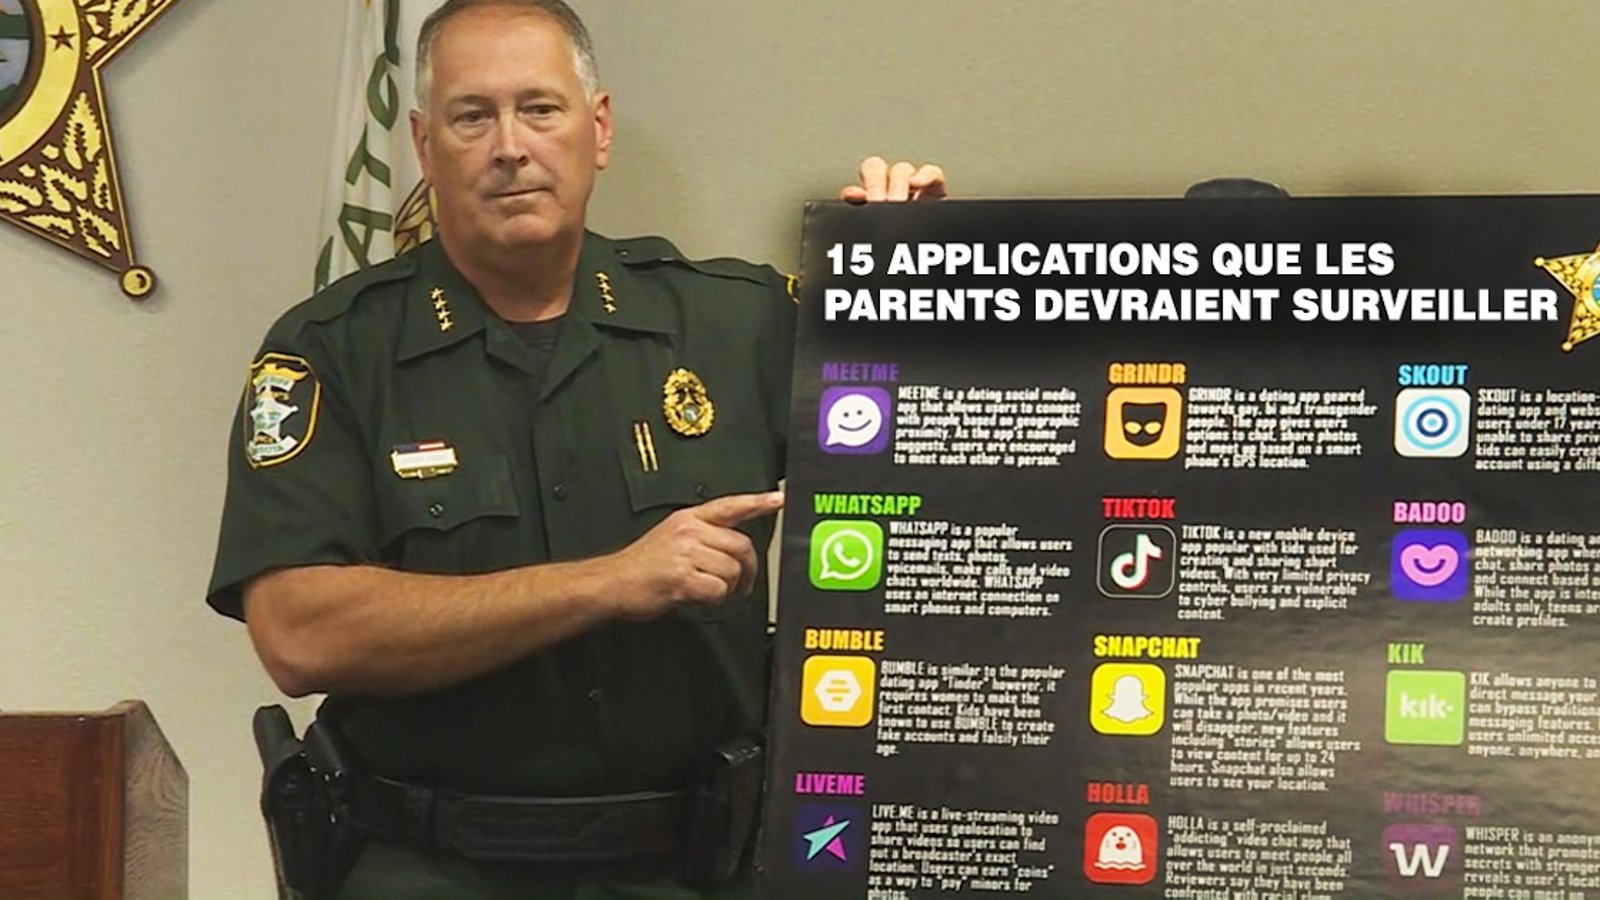 15 applications que vous devriez surveiller dans les téléphones de vos enfants, selon des policiers